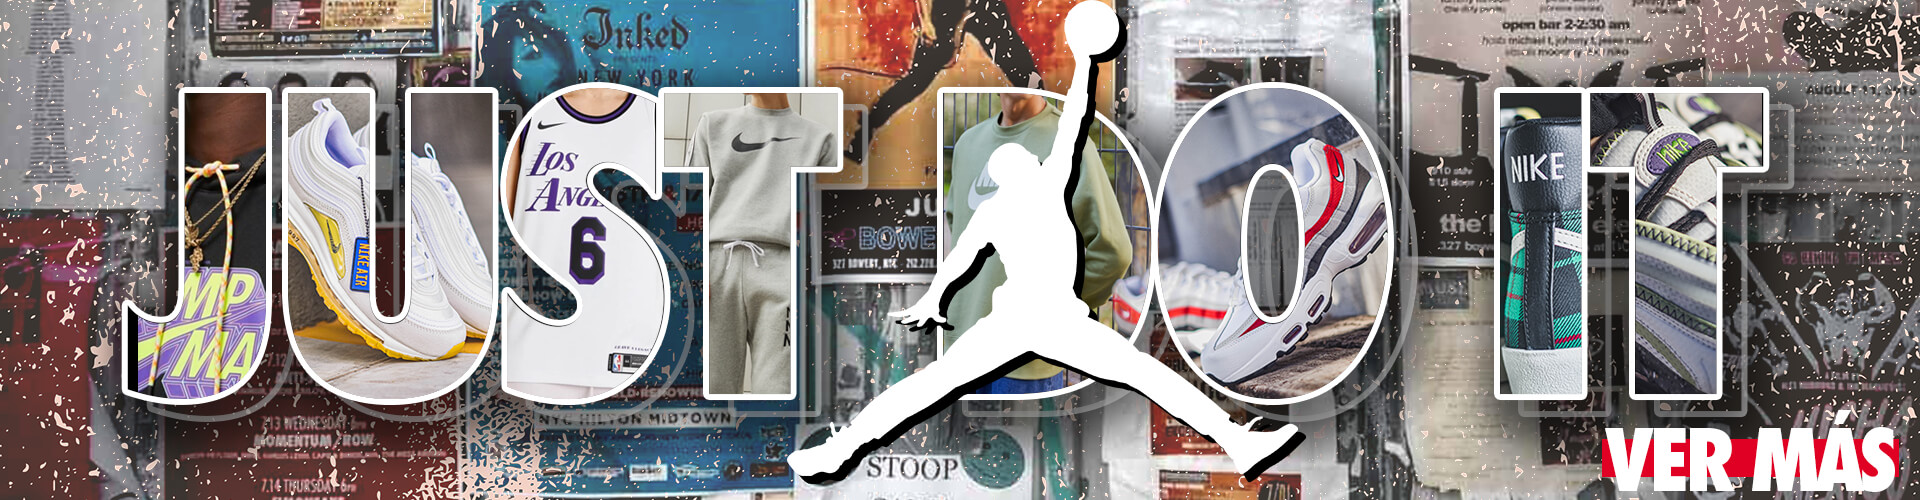 ¡Mirá los nuevos modelos de Nike y Jordan!